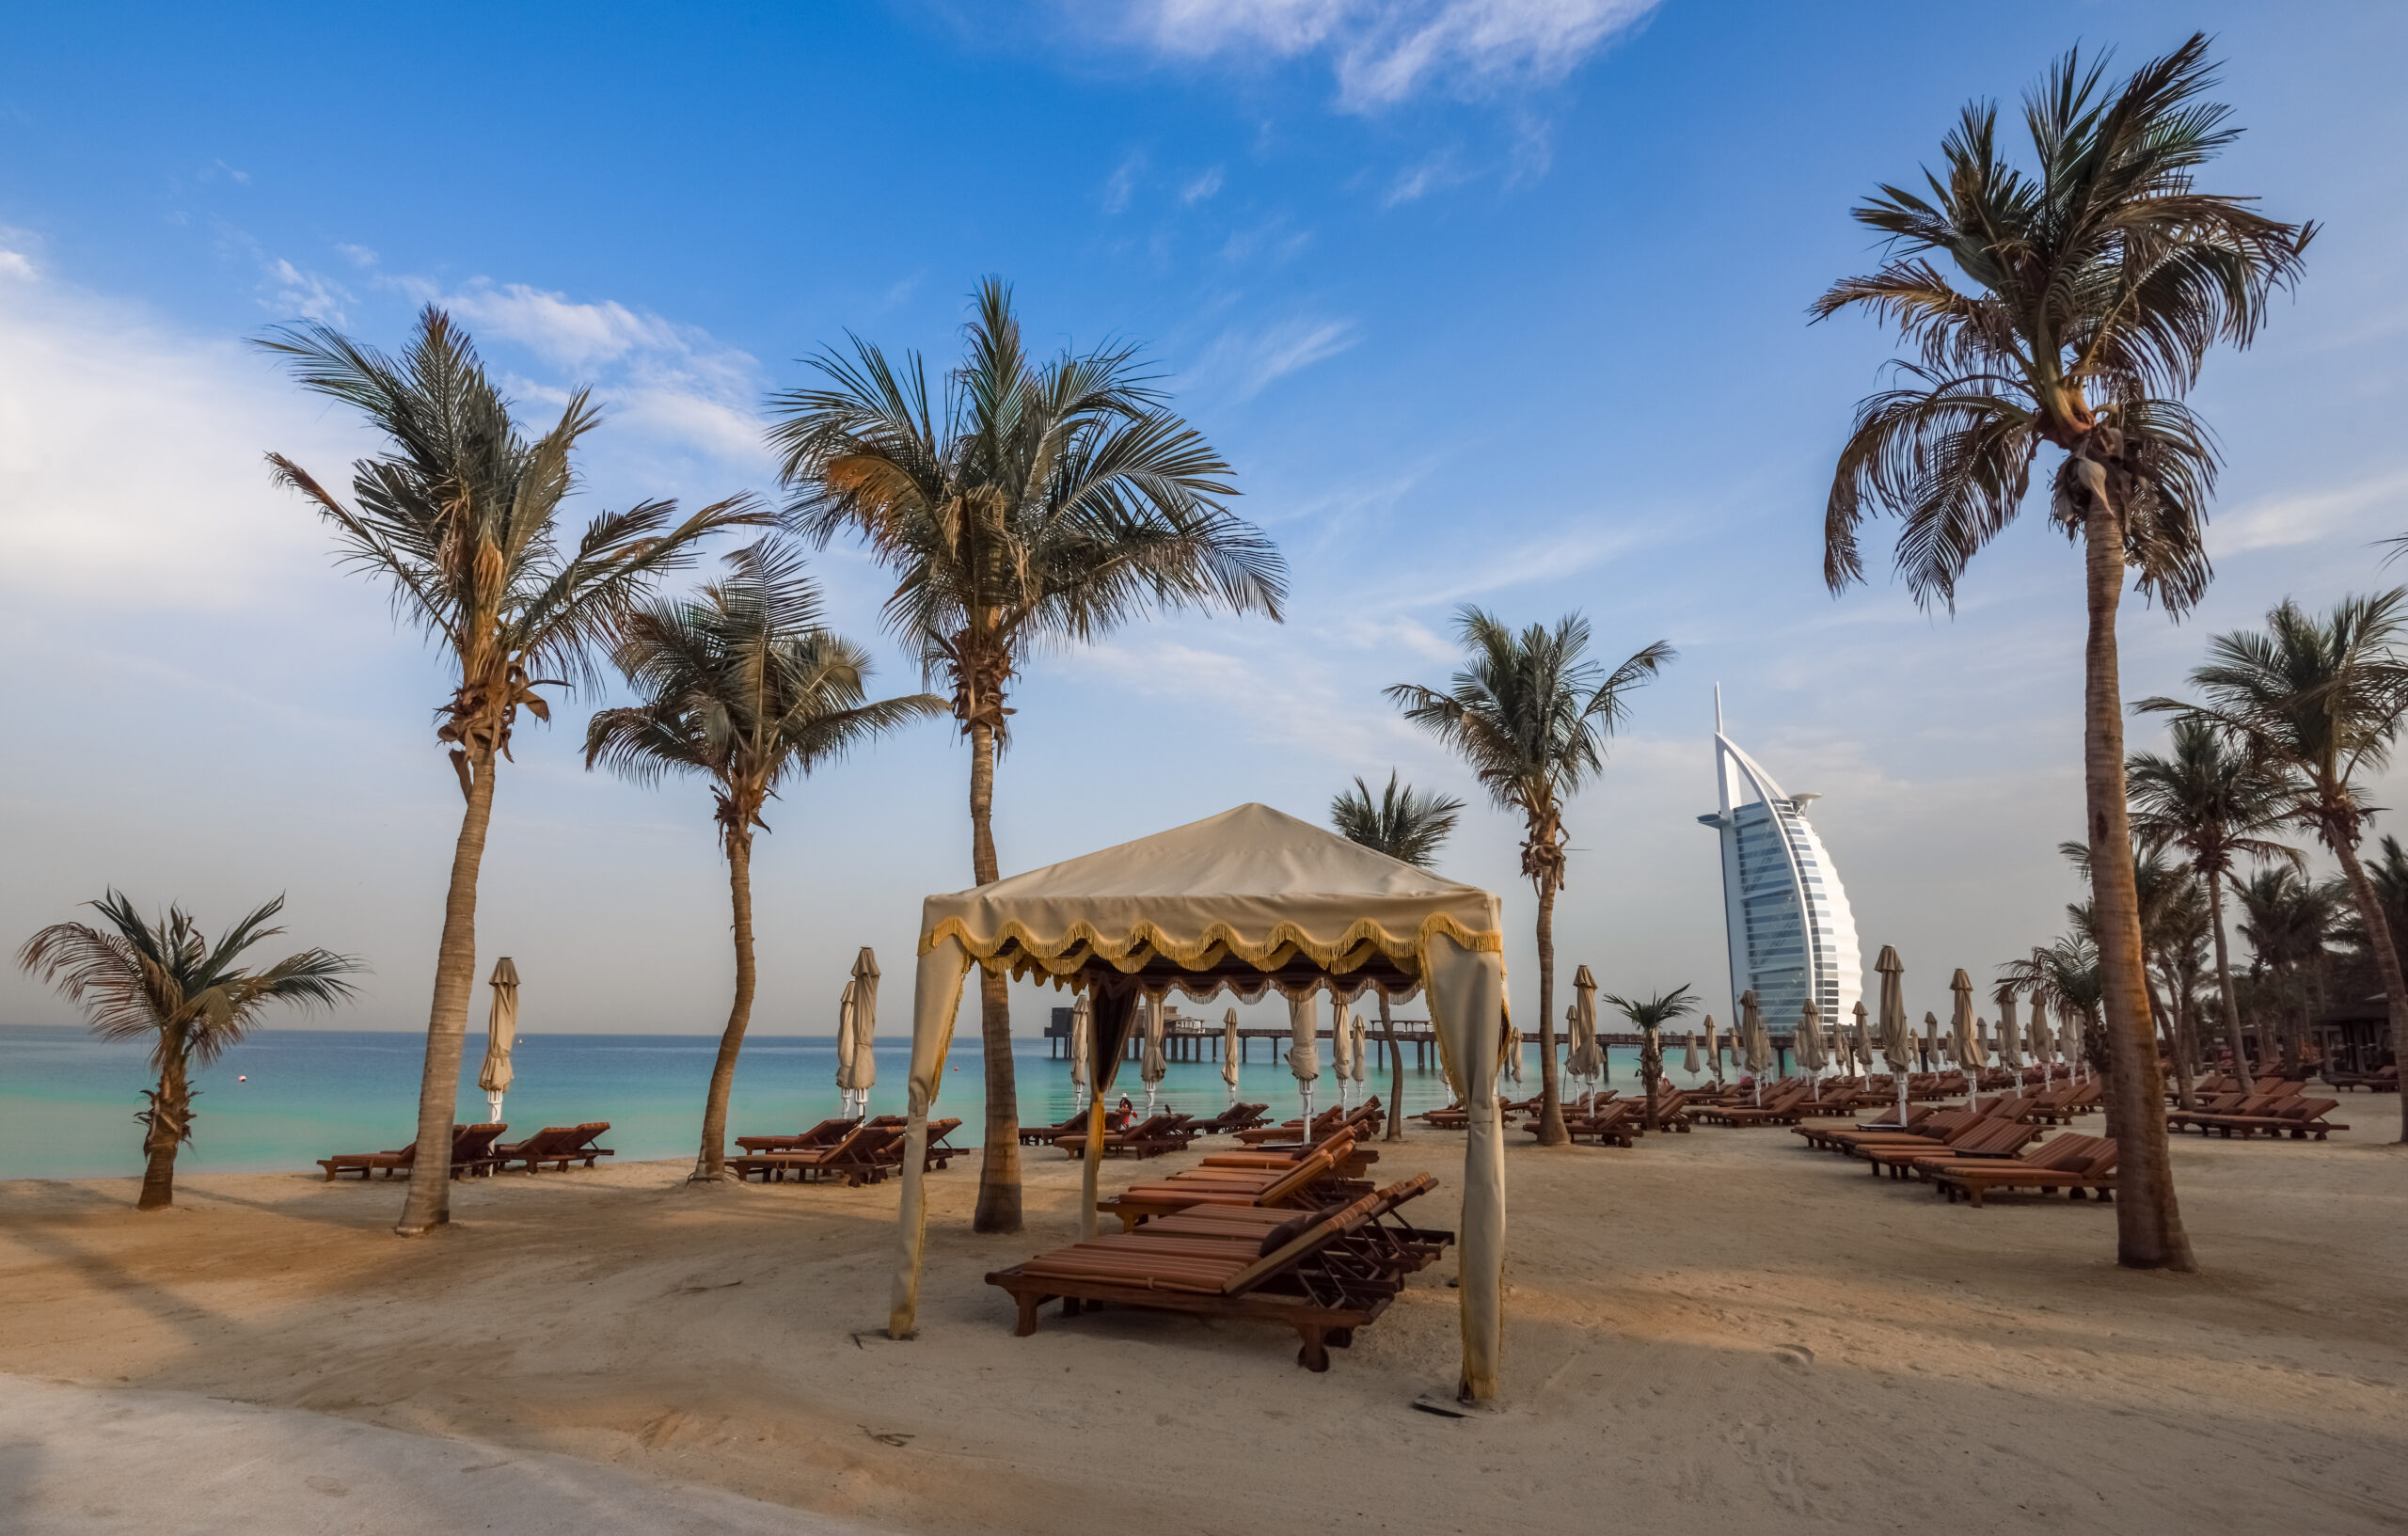 Best beaches in Dubai - Madinat Jumeirah Beach